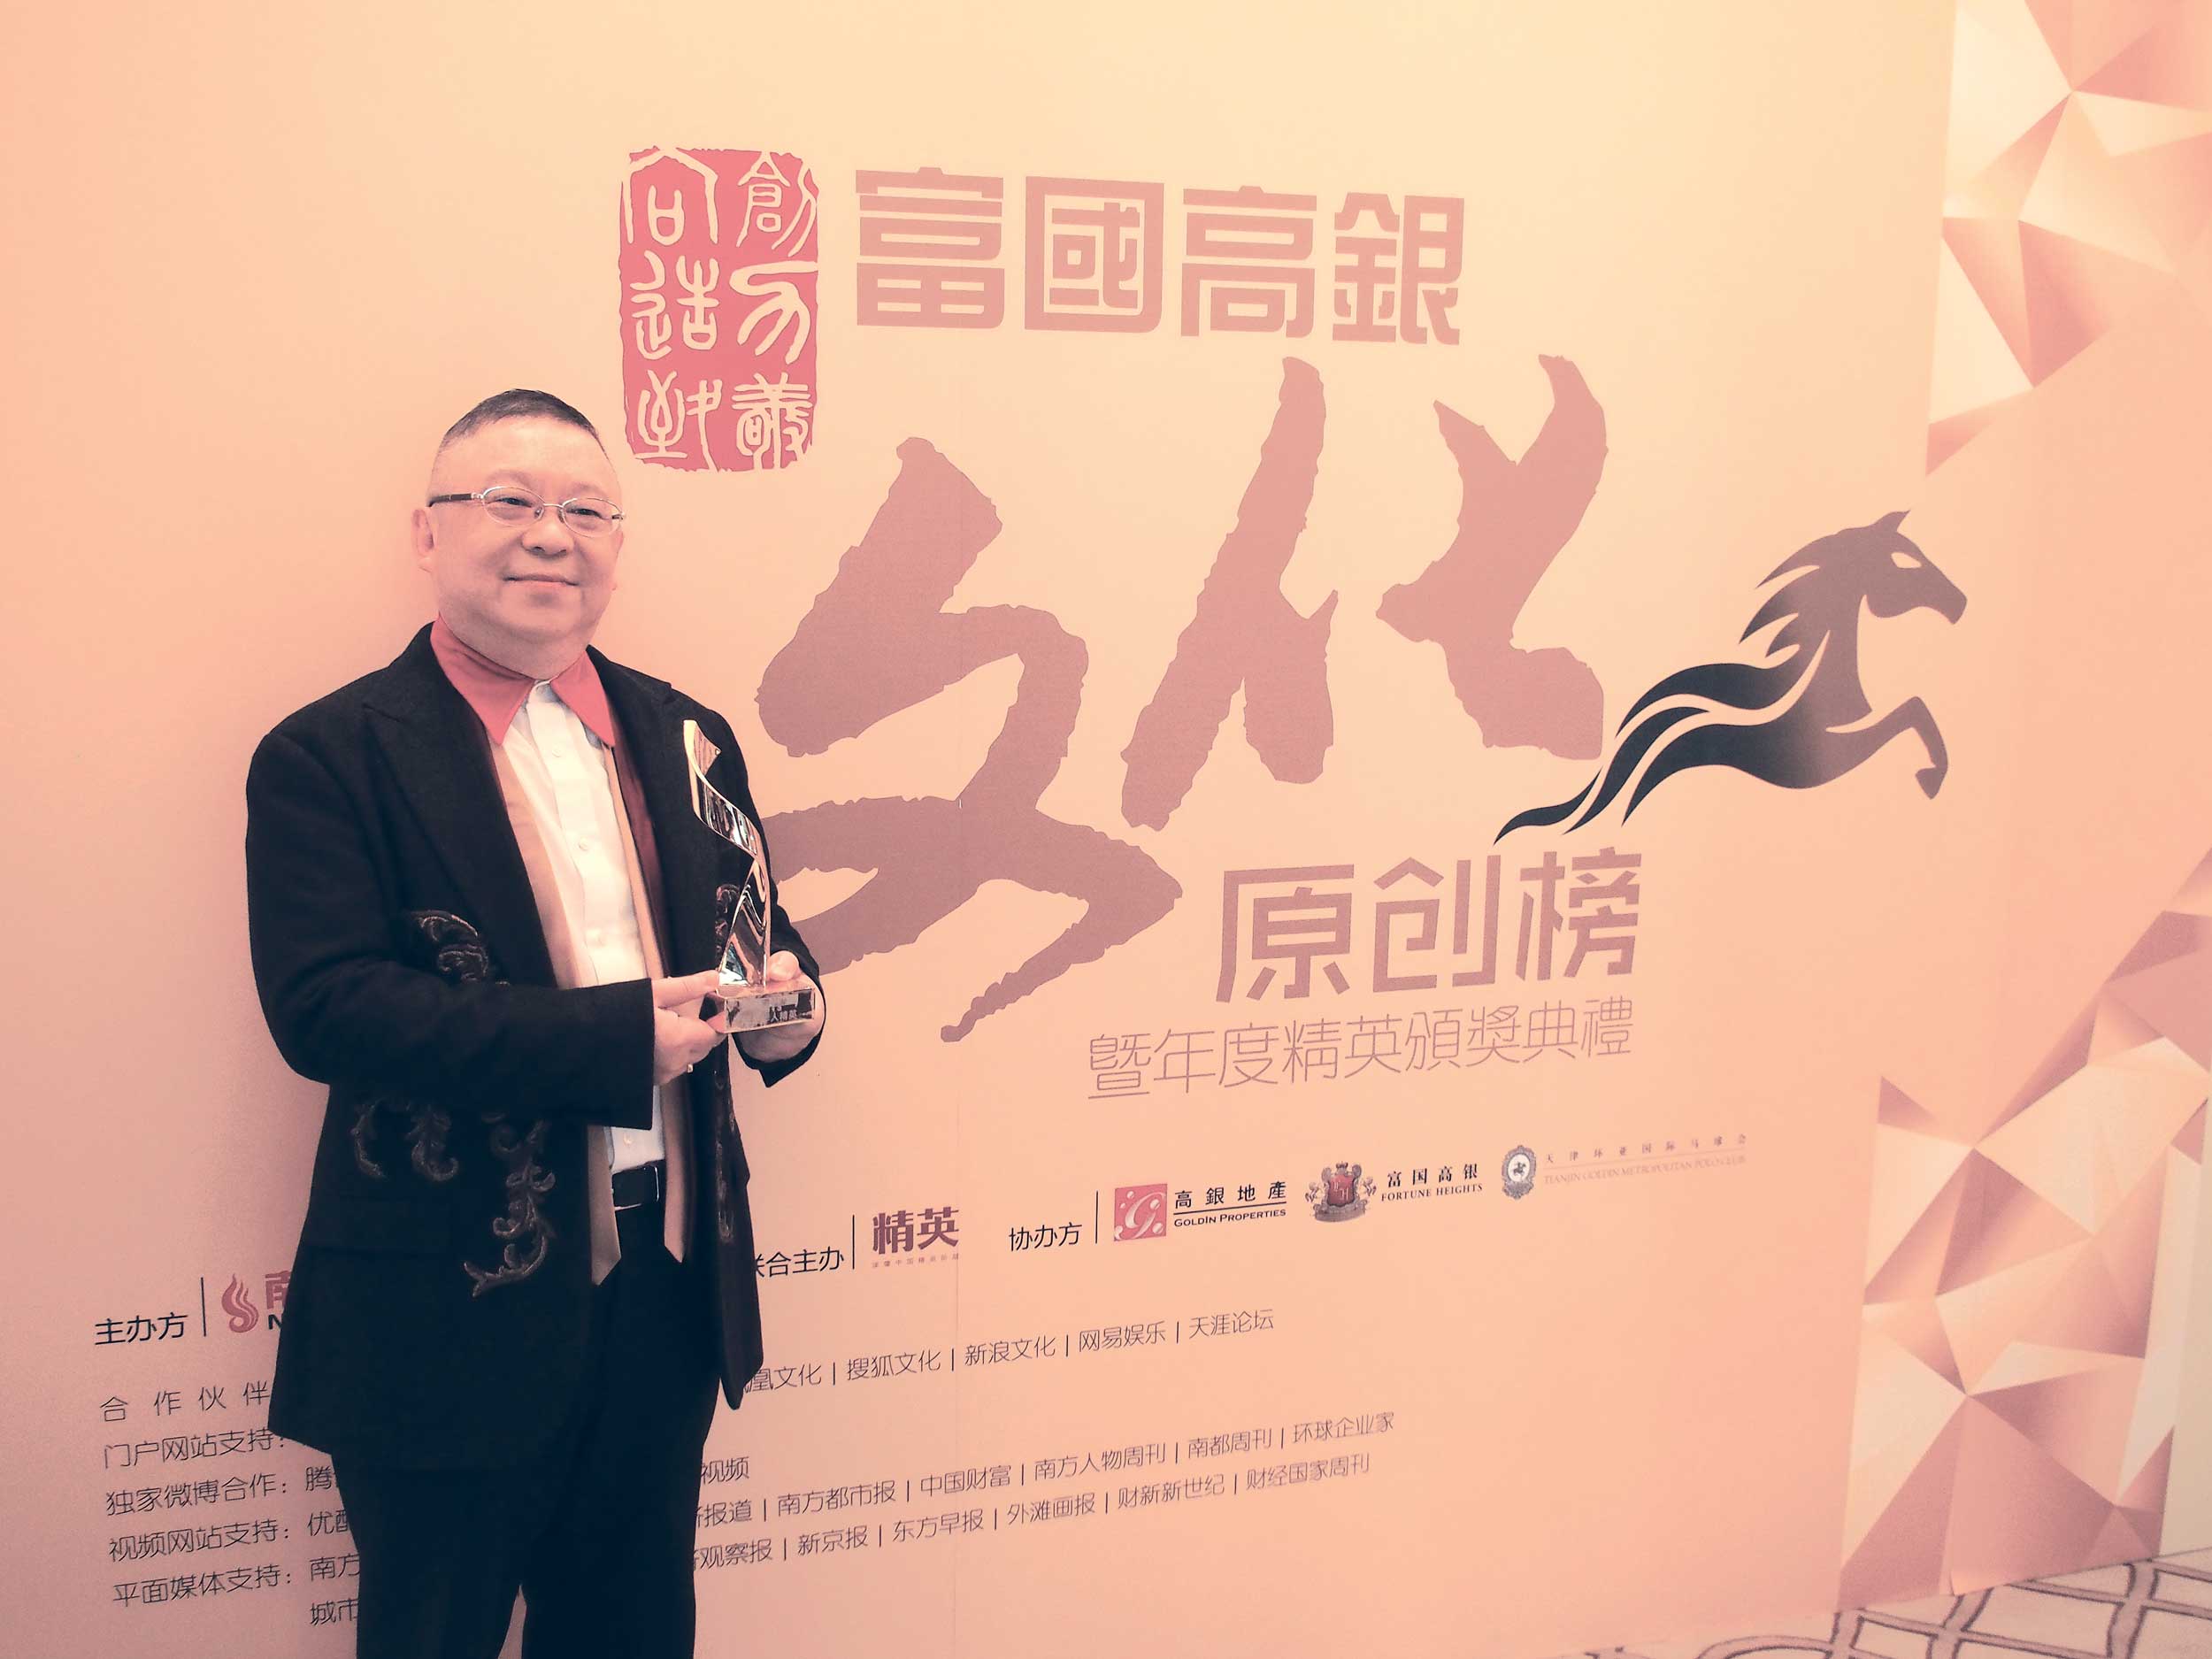 2014年1月11日，由南方報業傳媒集團、南方周末報社主辦的中國文化原創榜頒獎典禮在天津環亞馬球會酒店舉行，李居明榮登2013年度「中國原創文化榜」年度精英。